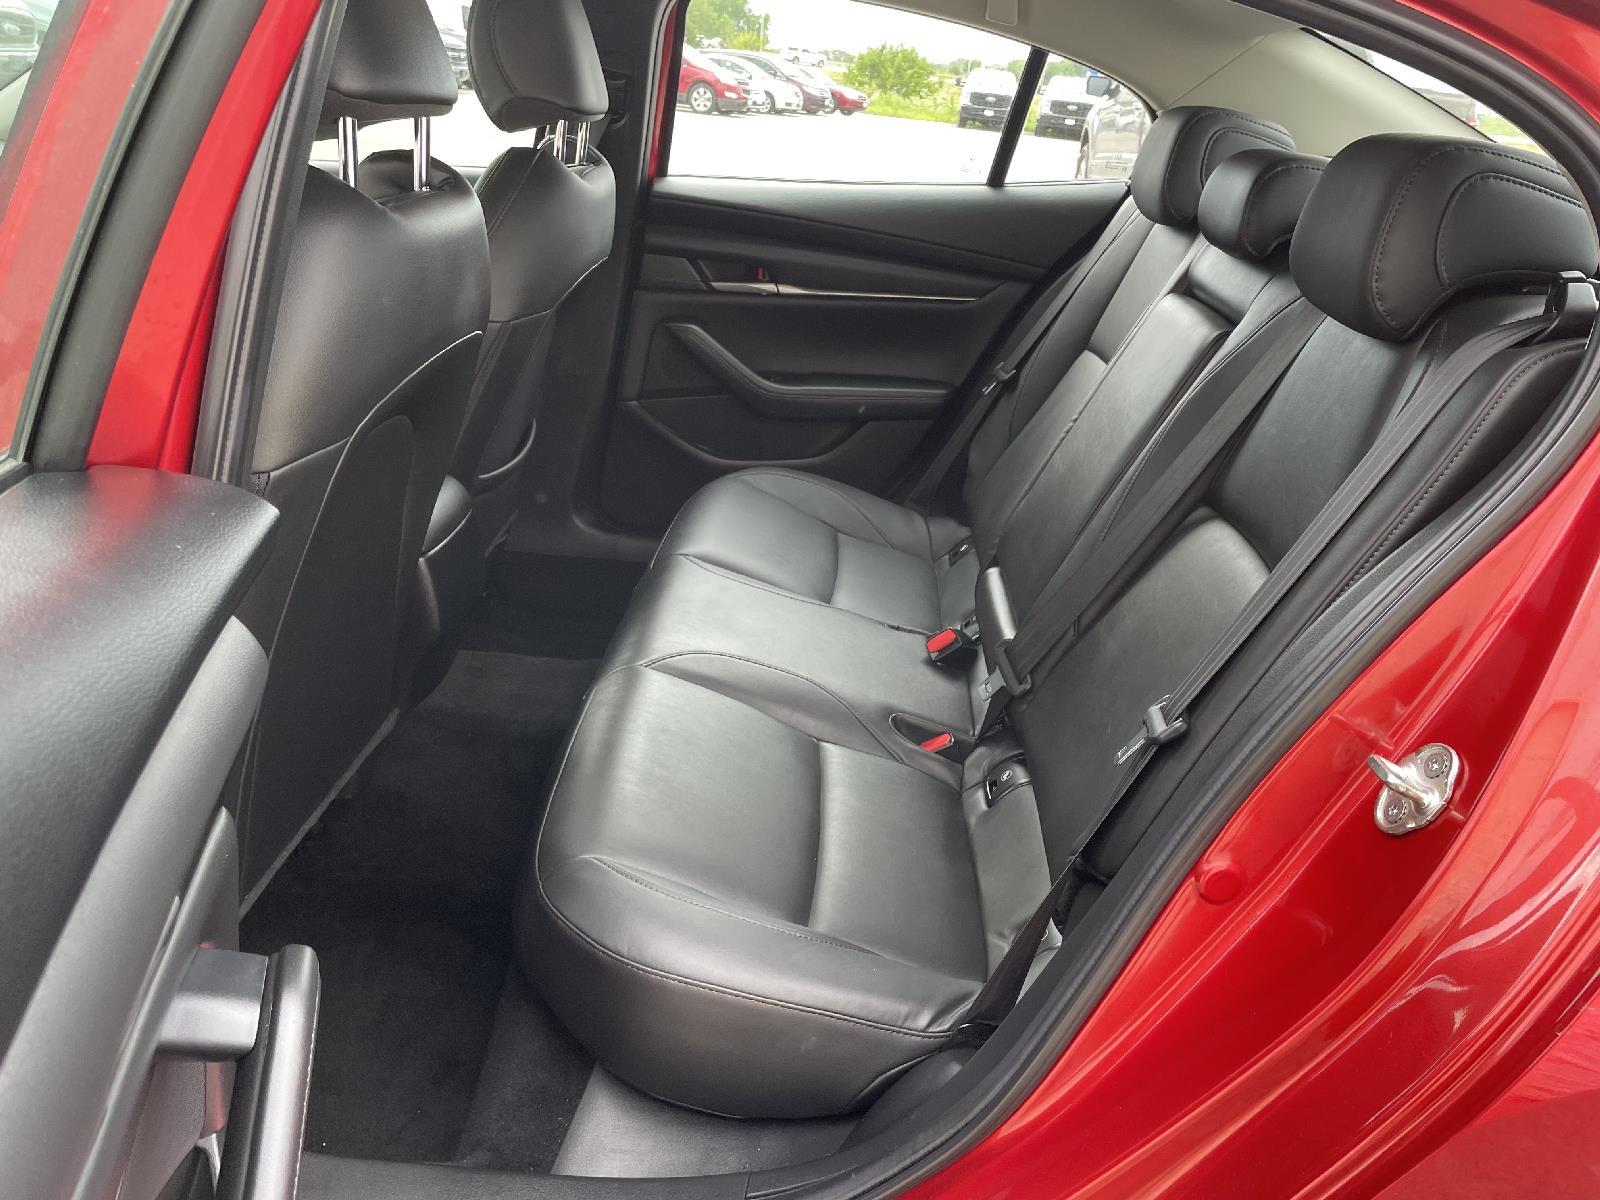 Used 2021 Mazda3 Sedan Select Sedan for sale in Lincoln NE